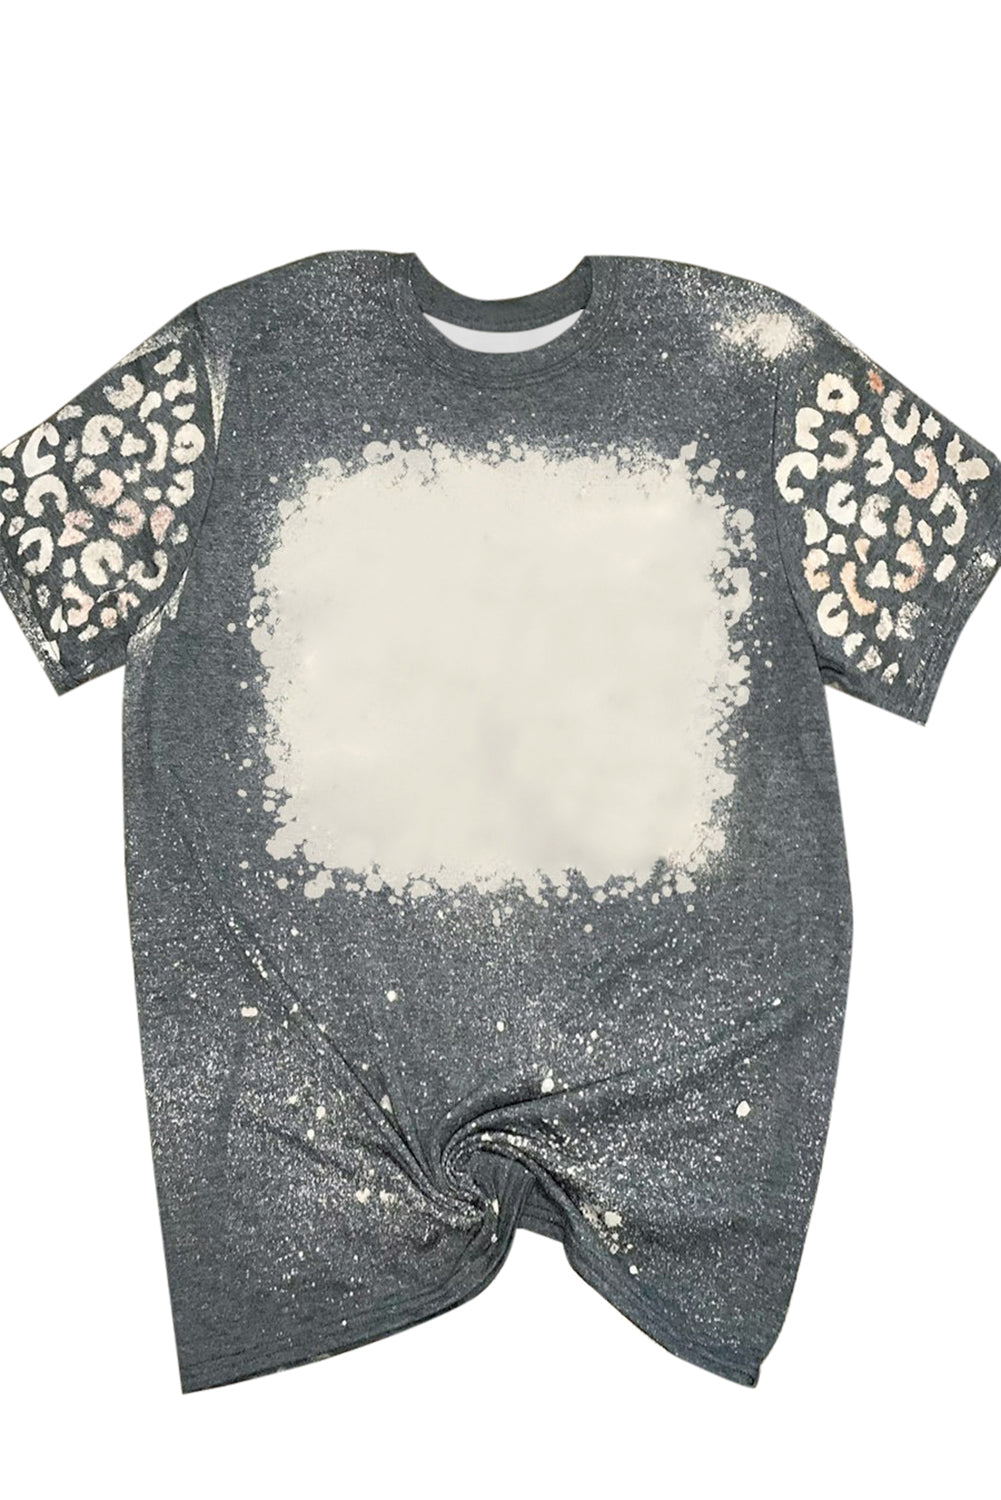 T-shirt à manches courtes léopard blanchi gris